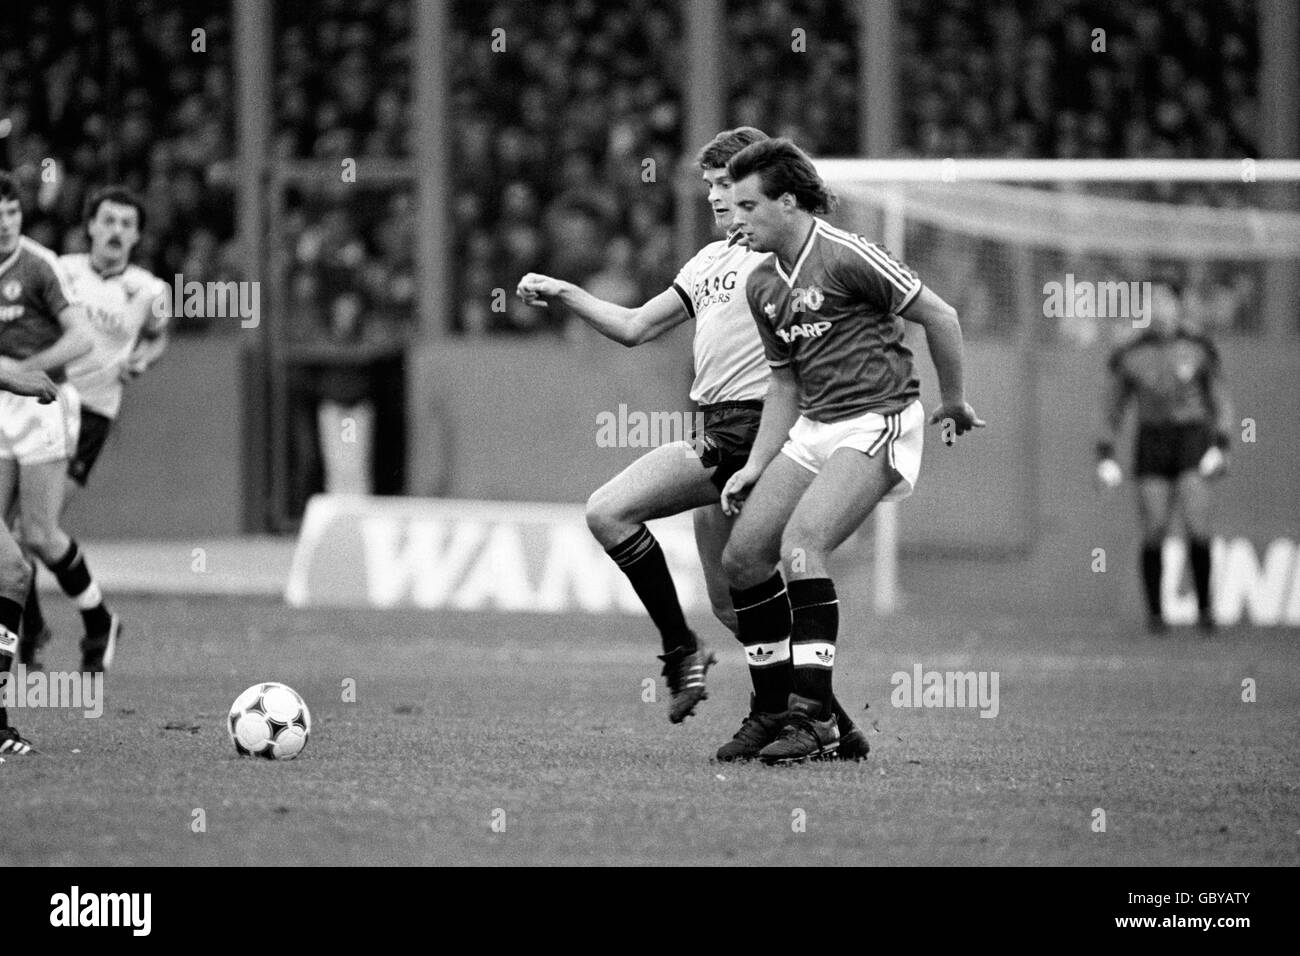 - División de la liga de fútbol hoy uno - Oxford United v Manchester United Foto de stock